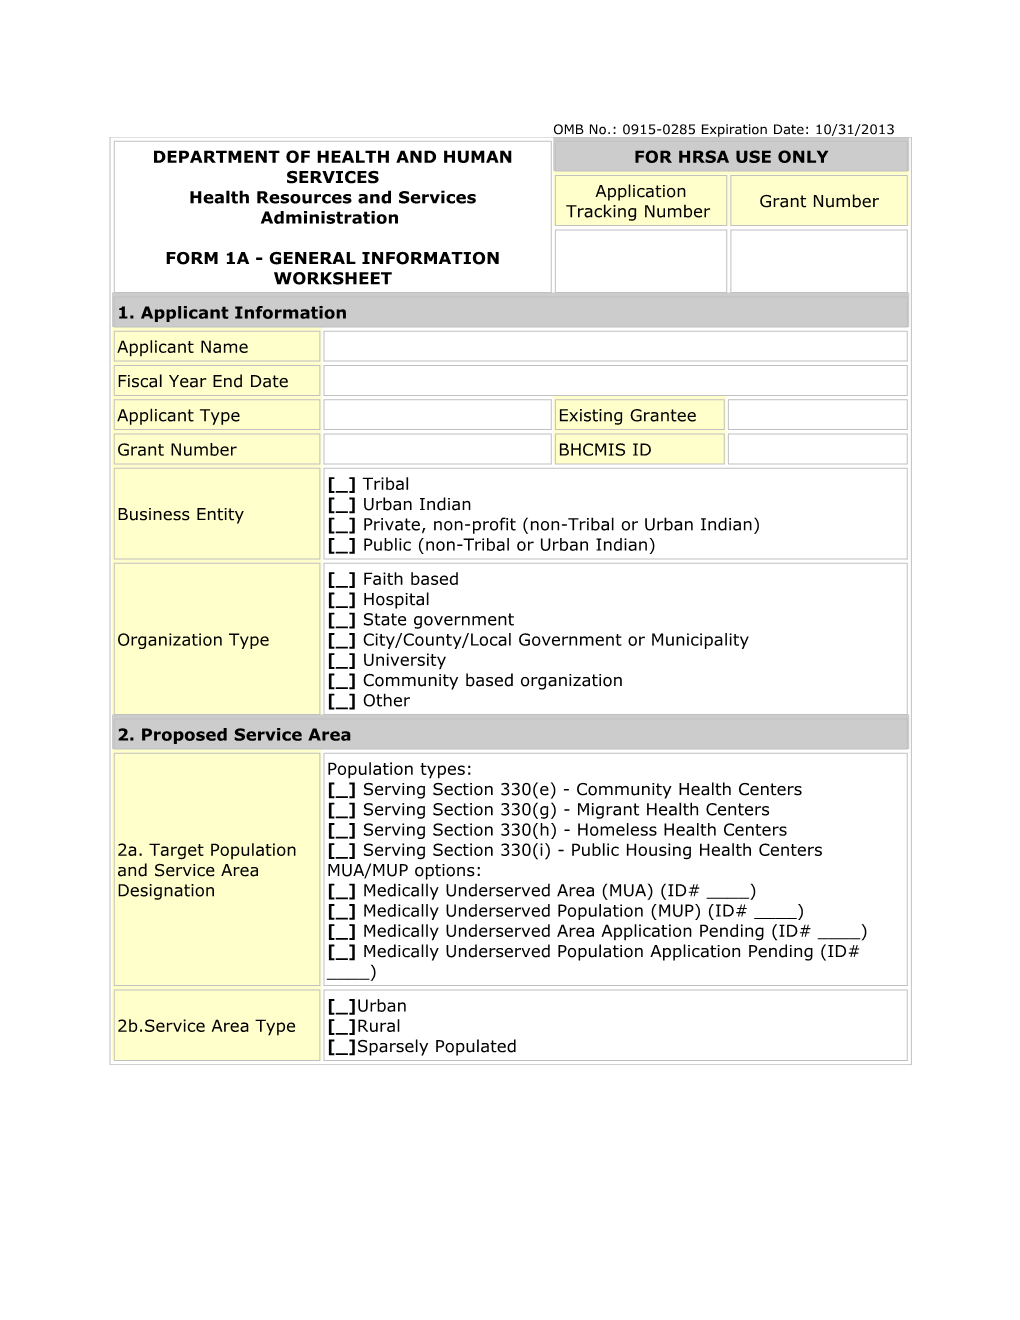 Form 1A: General Information Worksheet